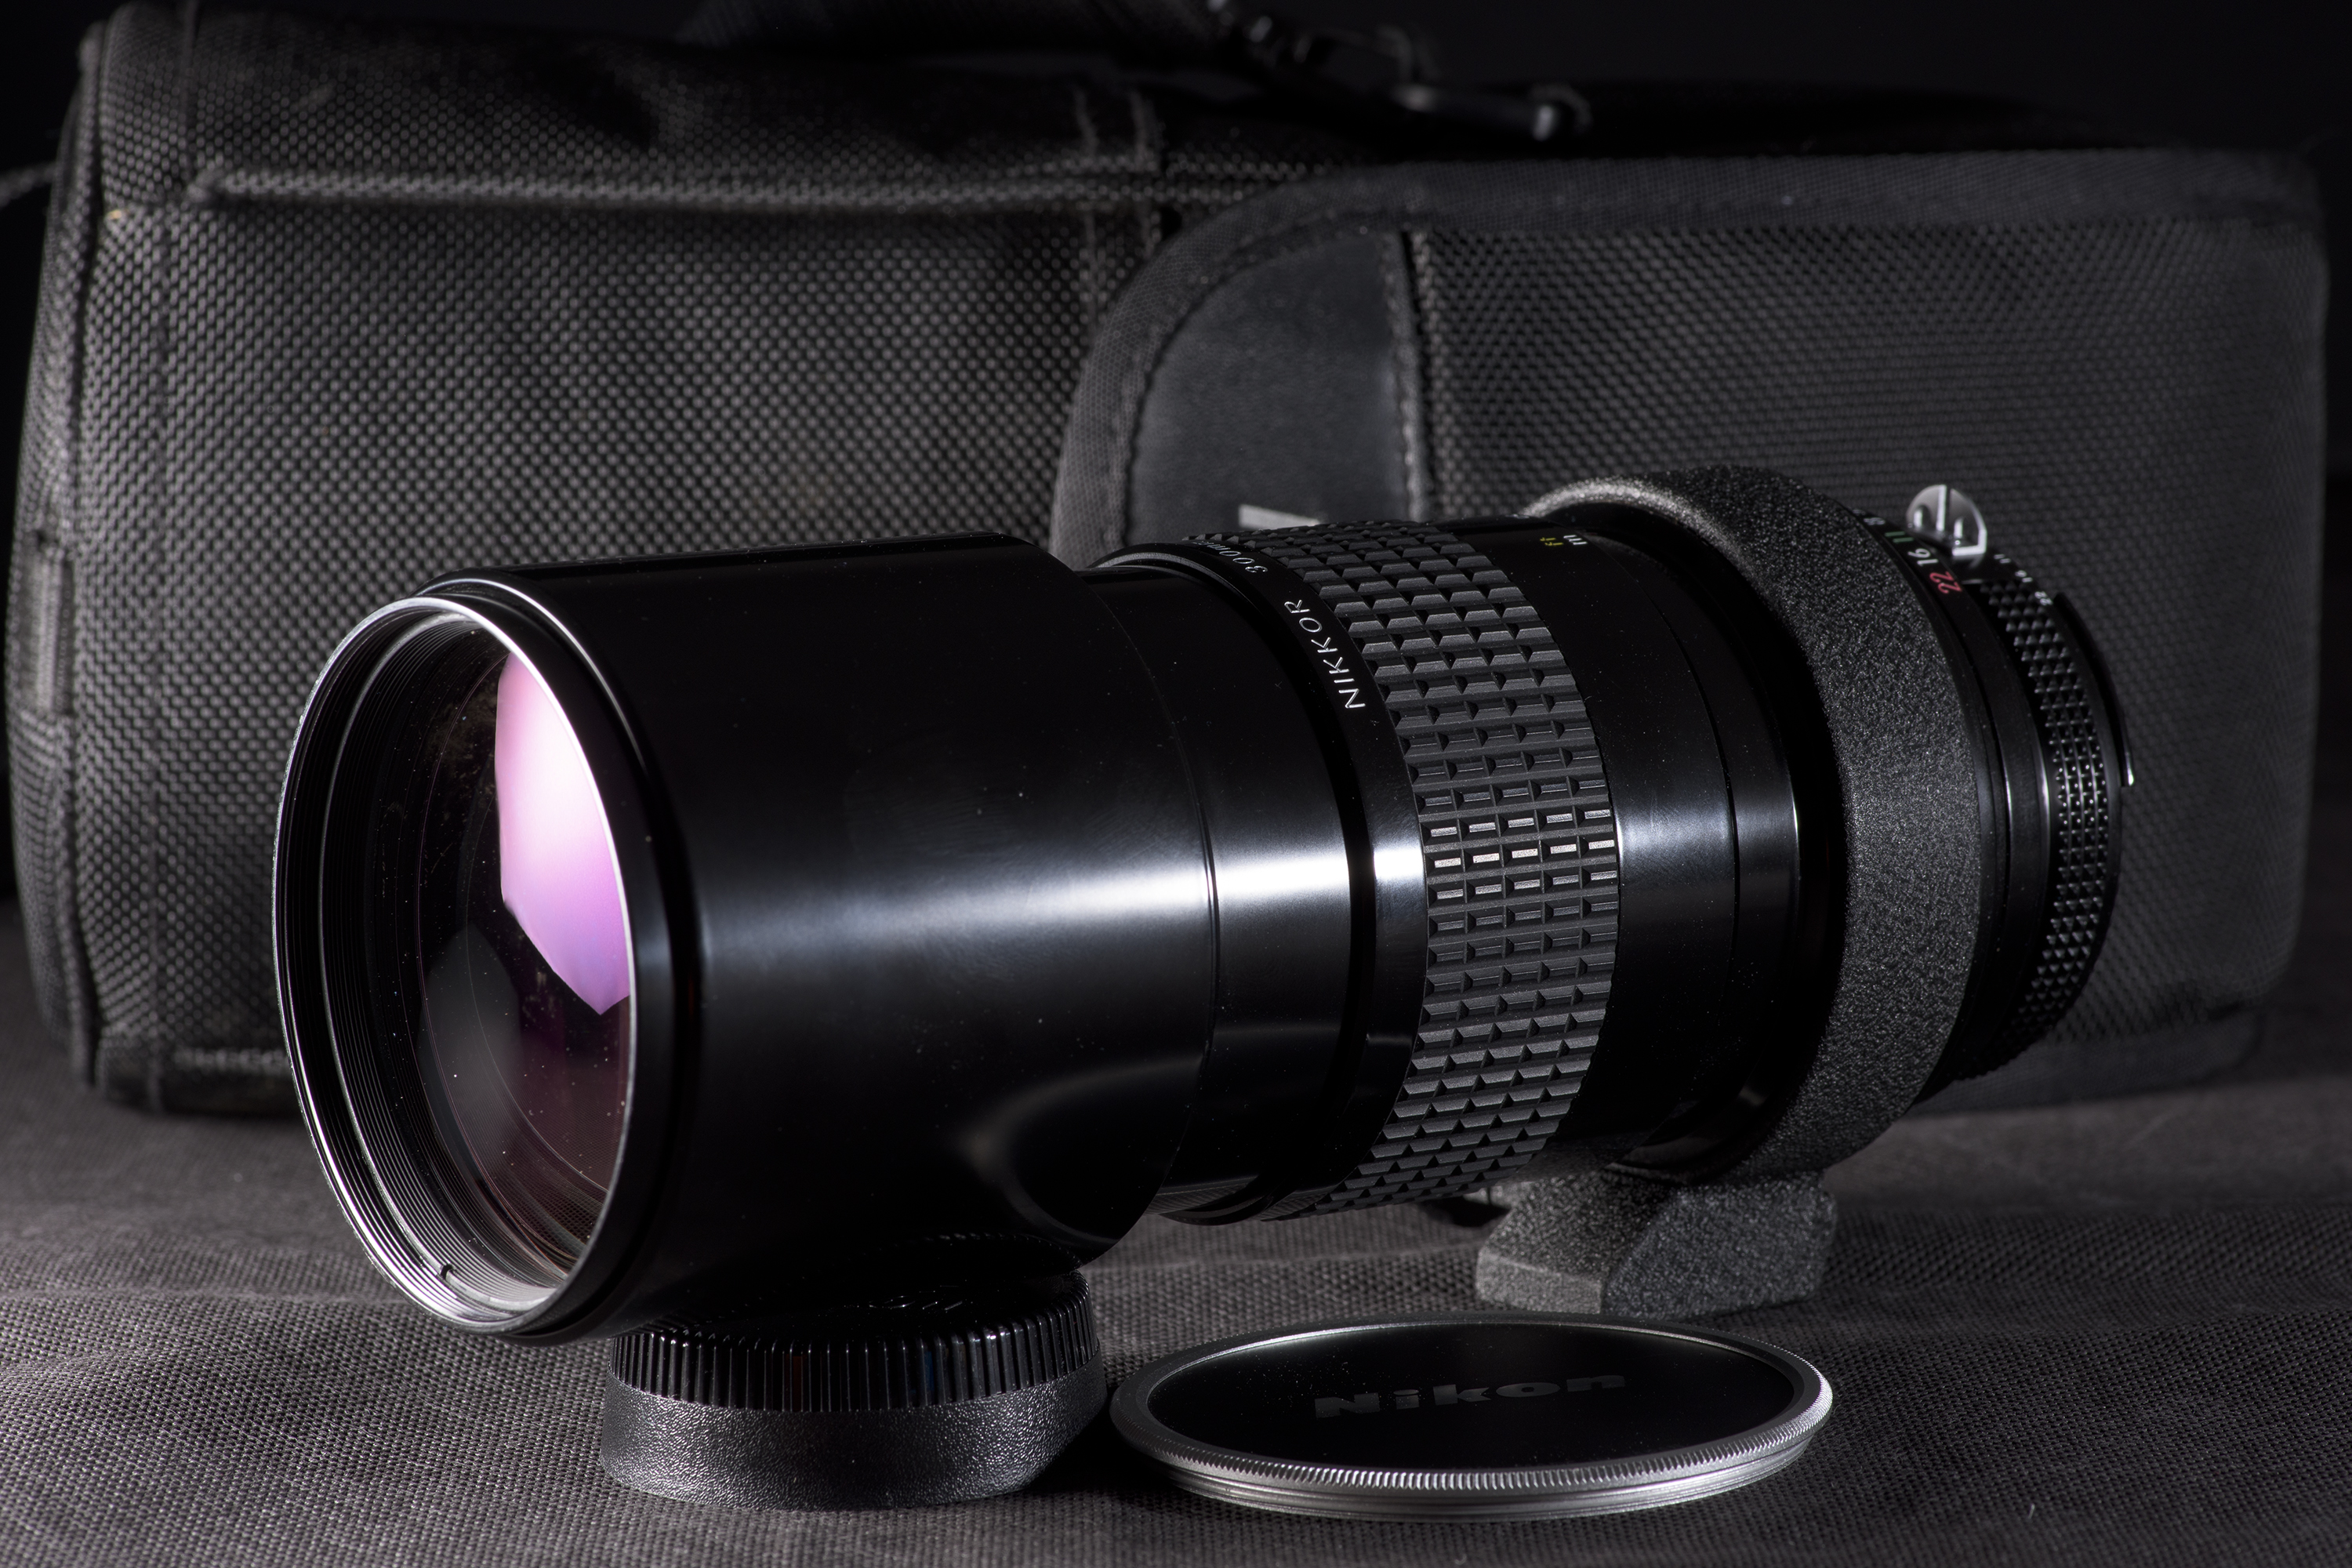 photography Nikon Nikkor 300mm ai ais lens review | Steve James' Blog